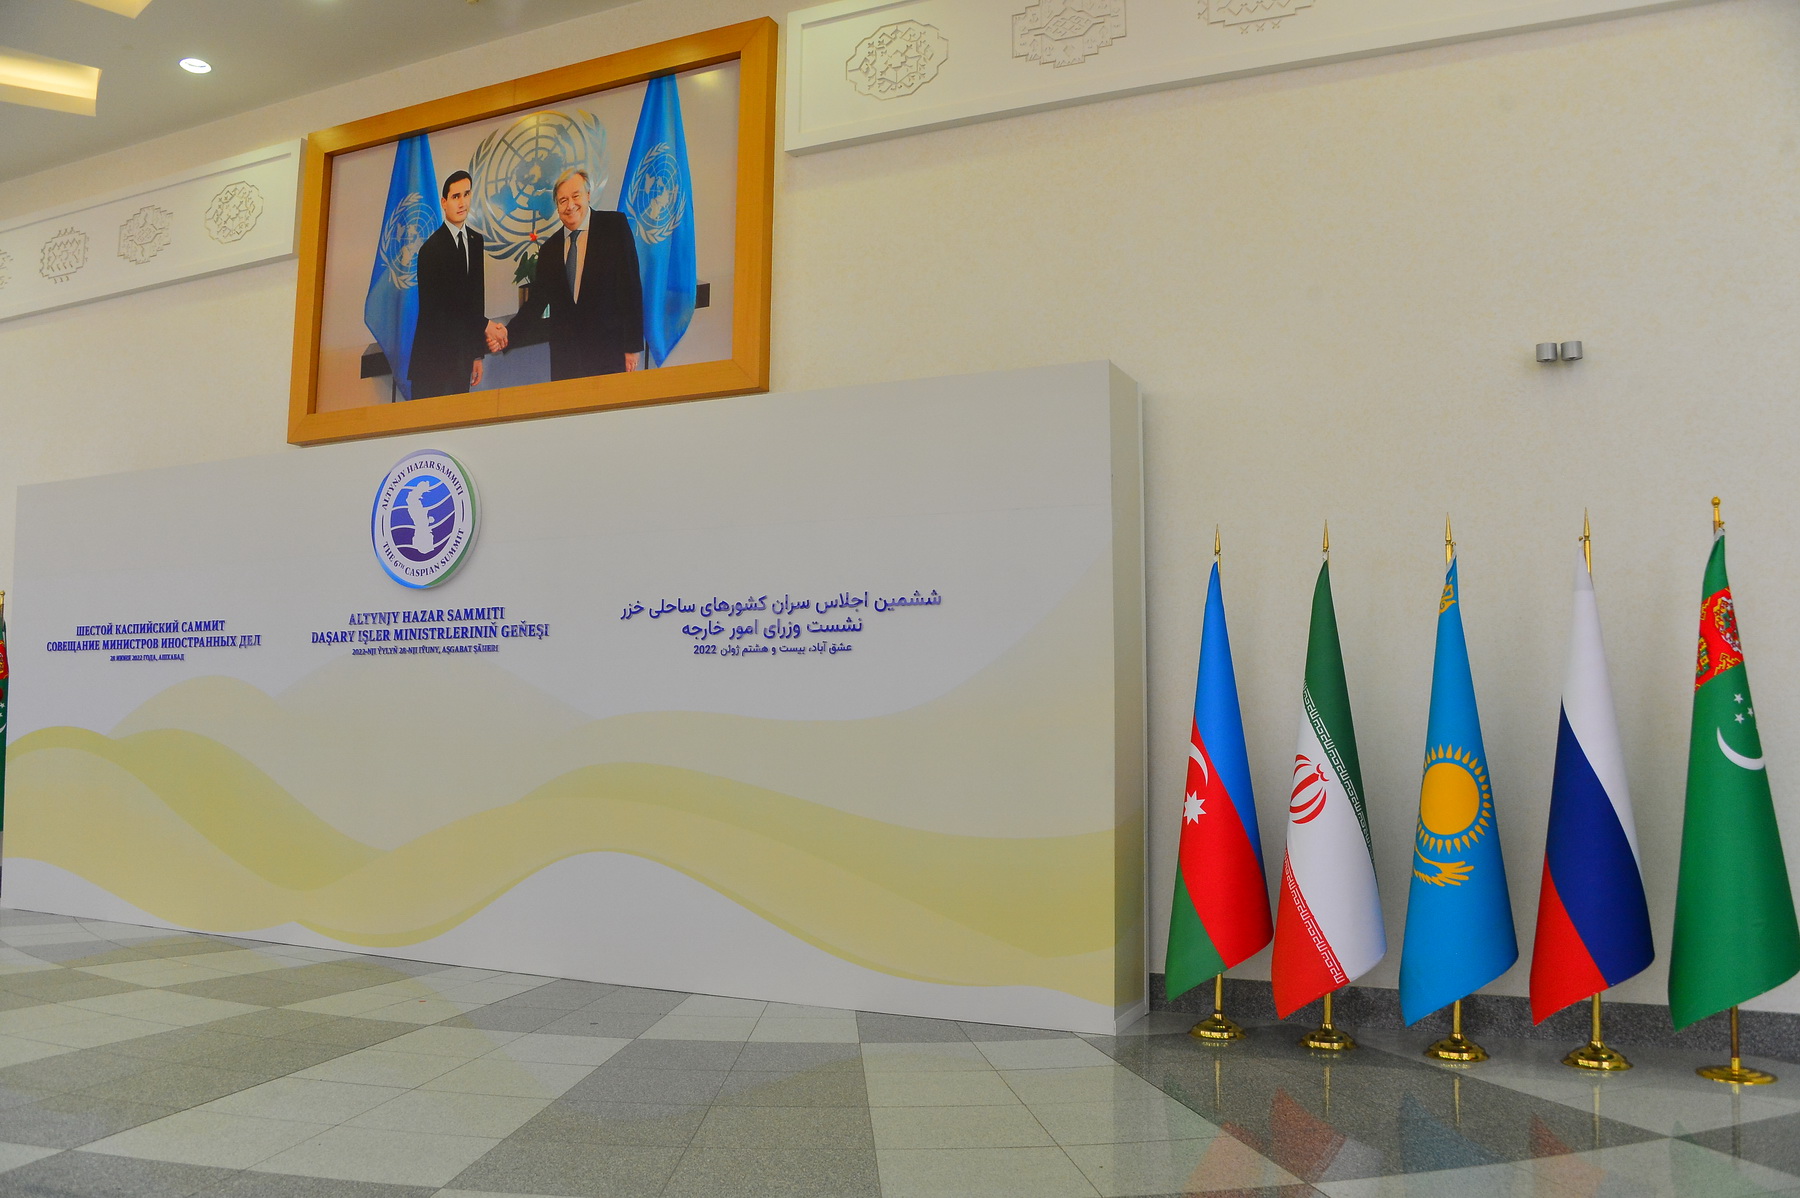 Каспийский Саммит: конструктивный диалог во имя общего будущего